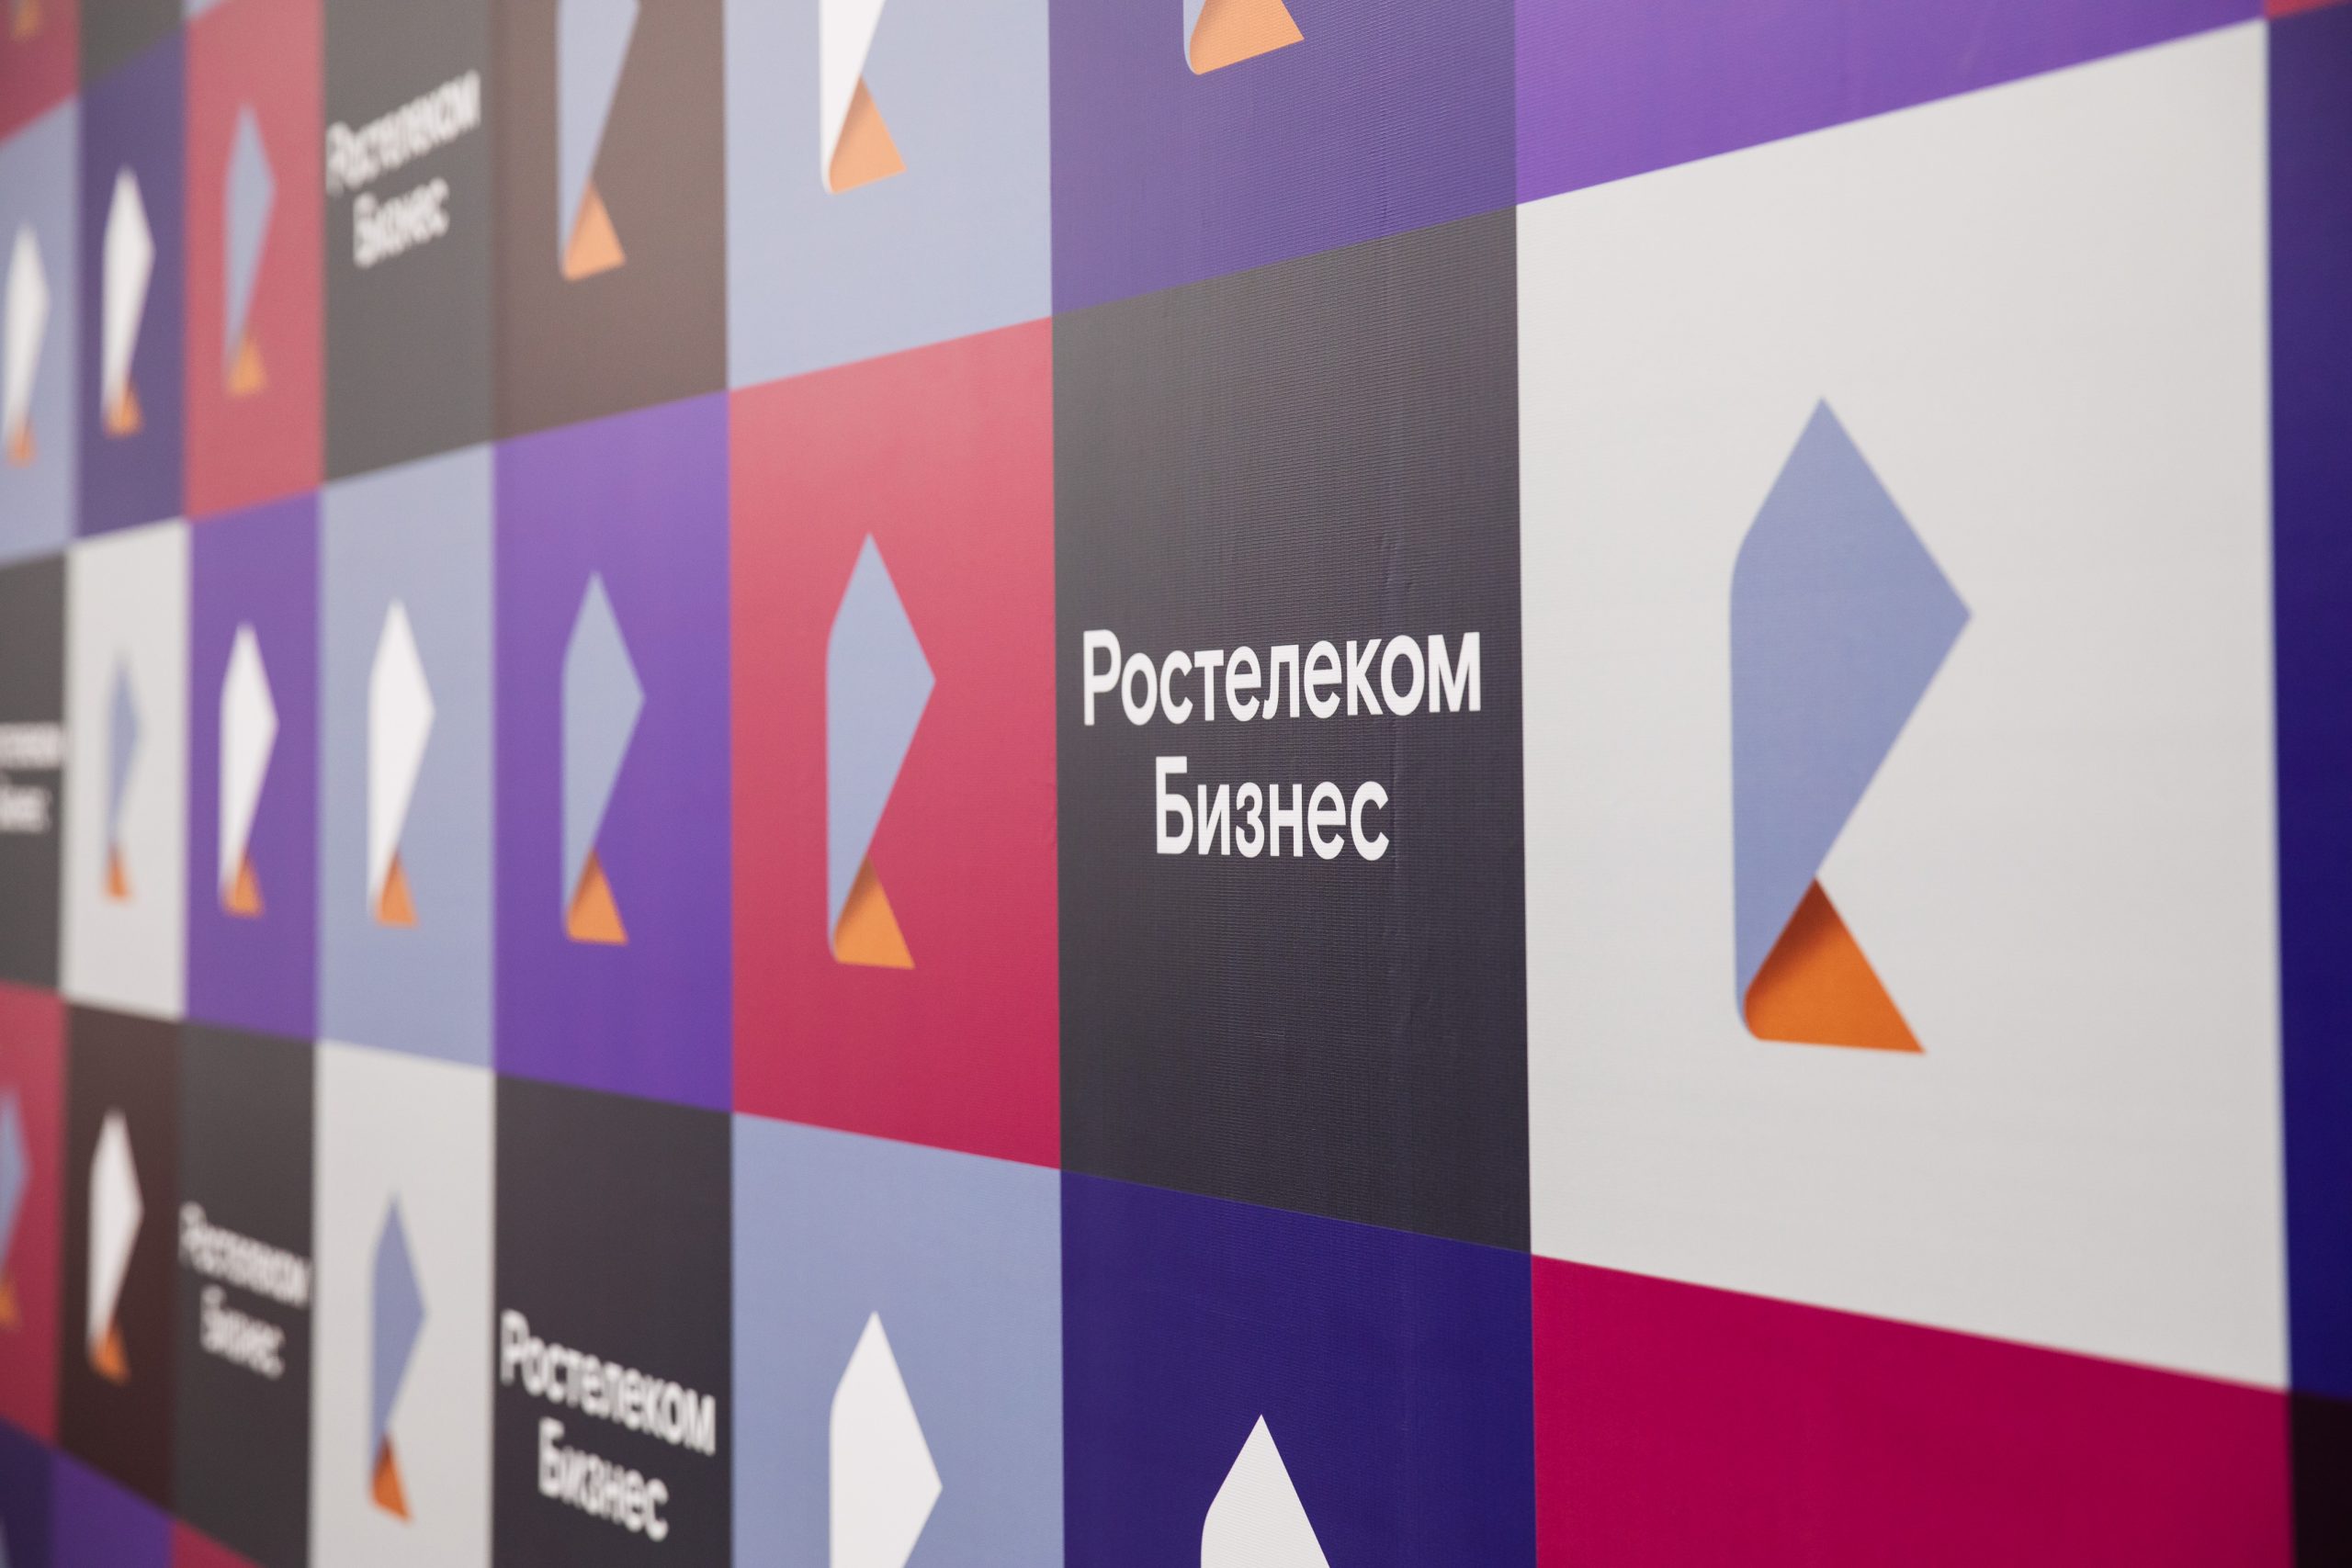 «Ростелеком» начал продажи софта «МойОфис» госсектору и частному бизнесу России